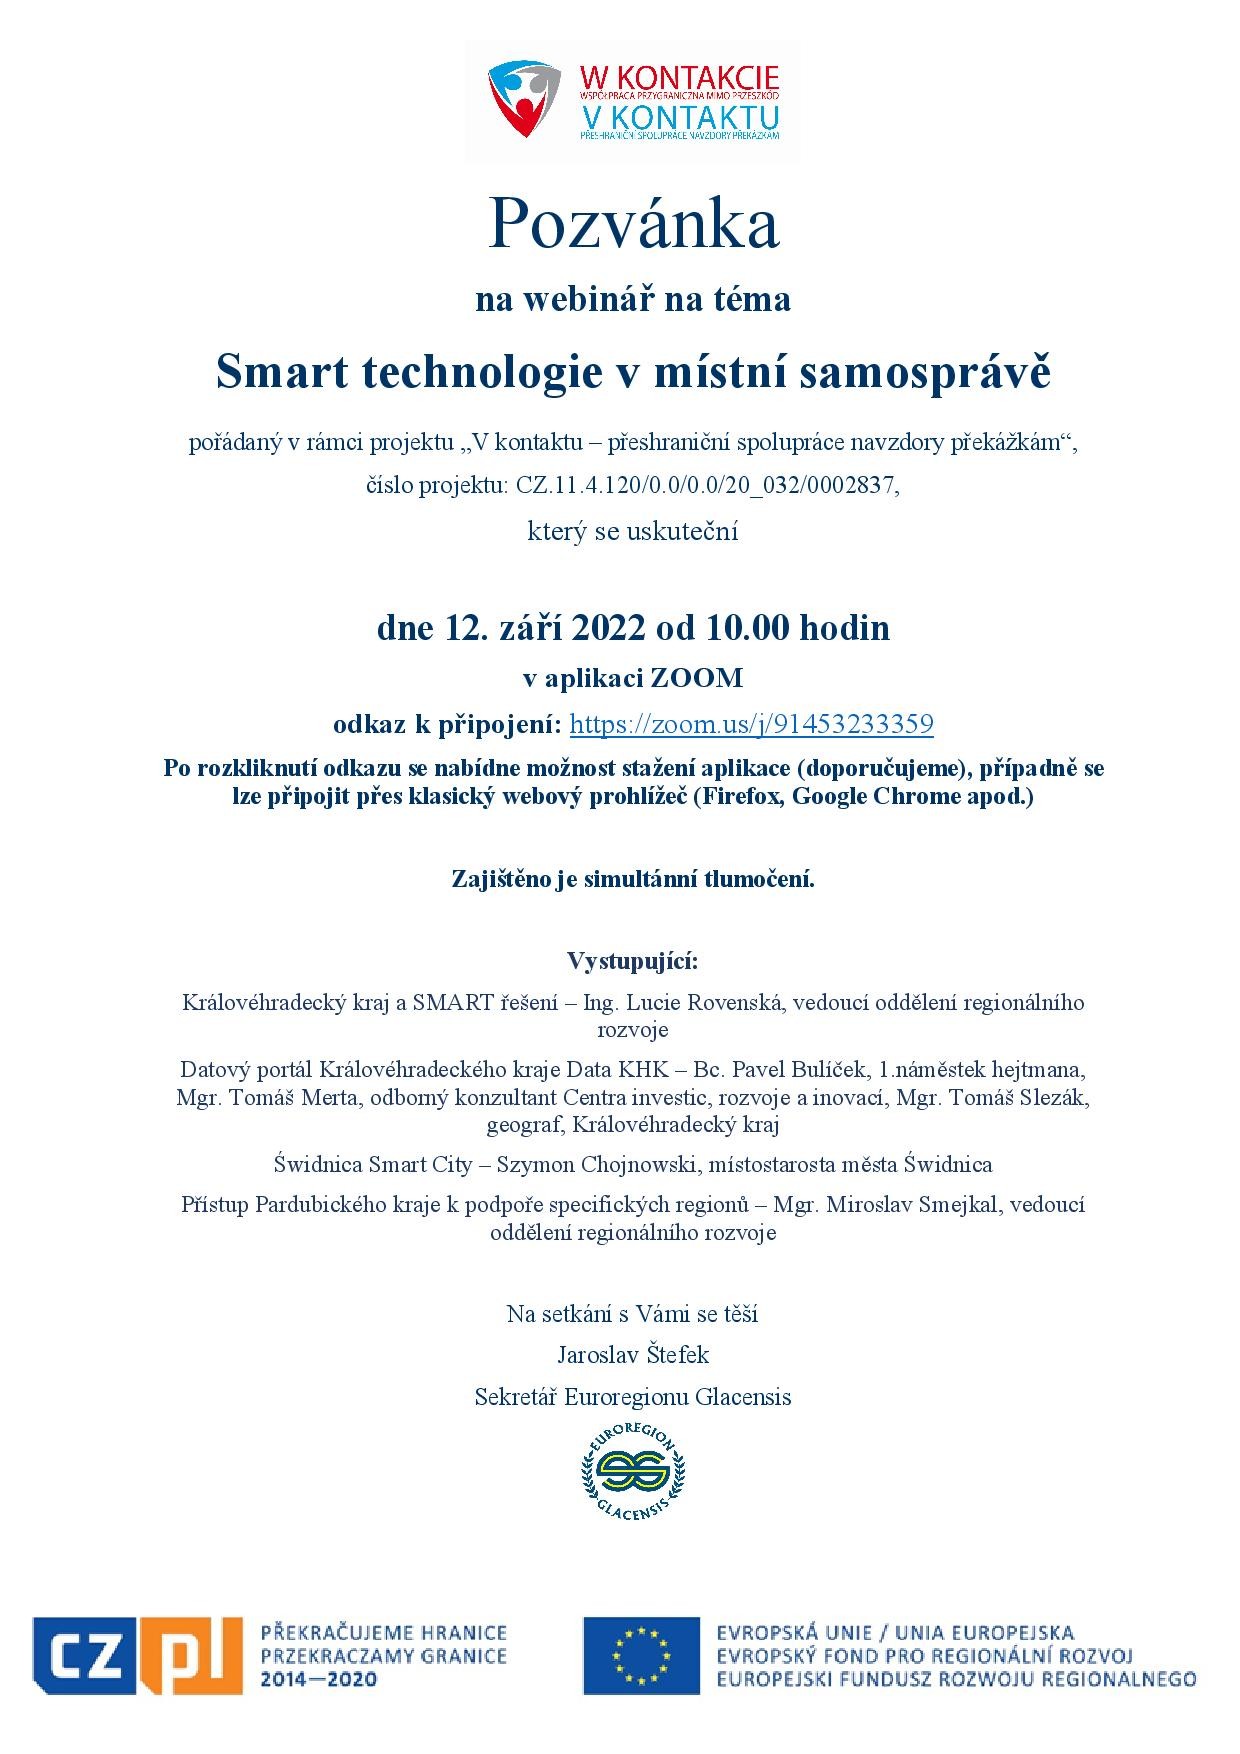 Pozvánka_Smart technologie_12.9.2022_CZ